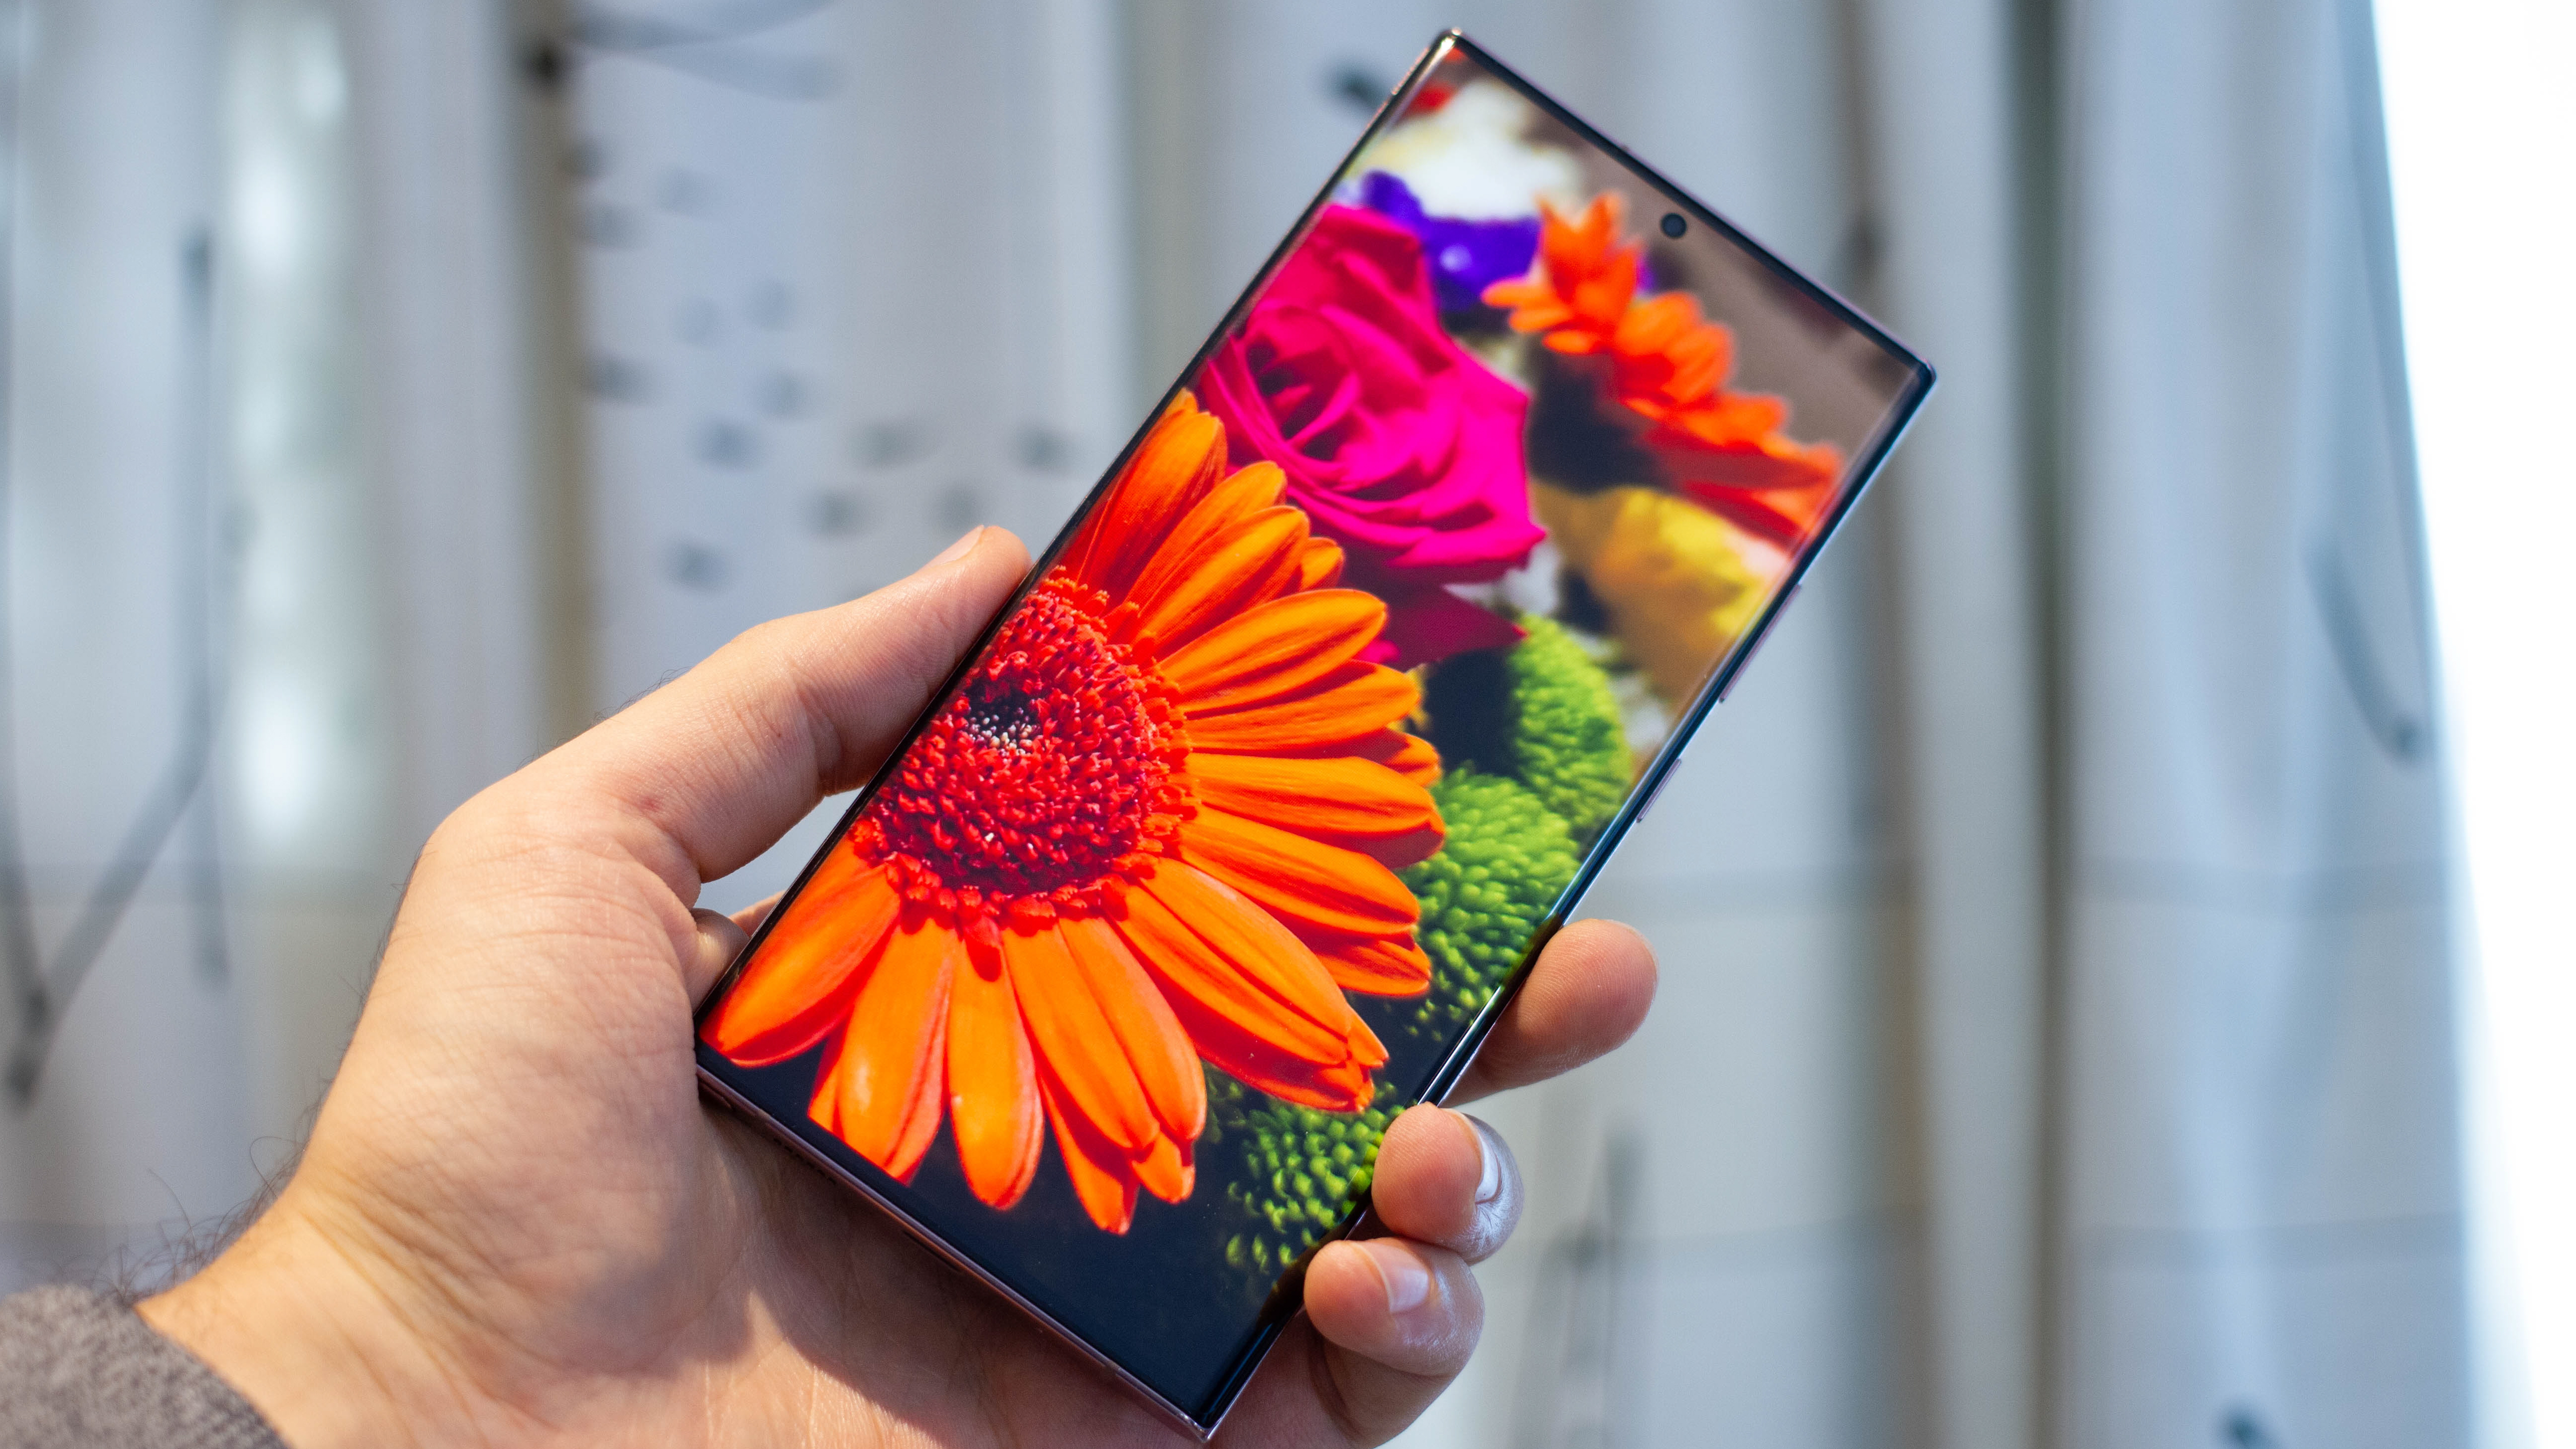 Samsung Galaxy Note 20 Ultra 5G đã đến! Hãy cùng xem đánh giá chi tiết của nó để biết thêm về những tính năng vượt trội cùng sự thay đổi đột phá của Samsung, giúp người dùng trải nghiệm thú vị và tràn đầy sáng tạo. 